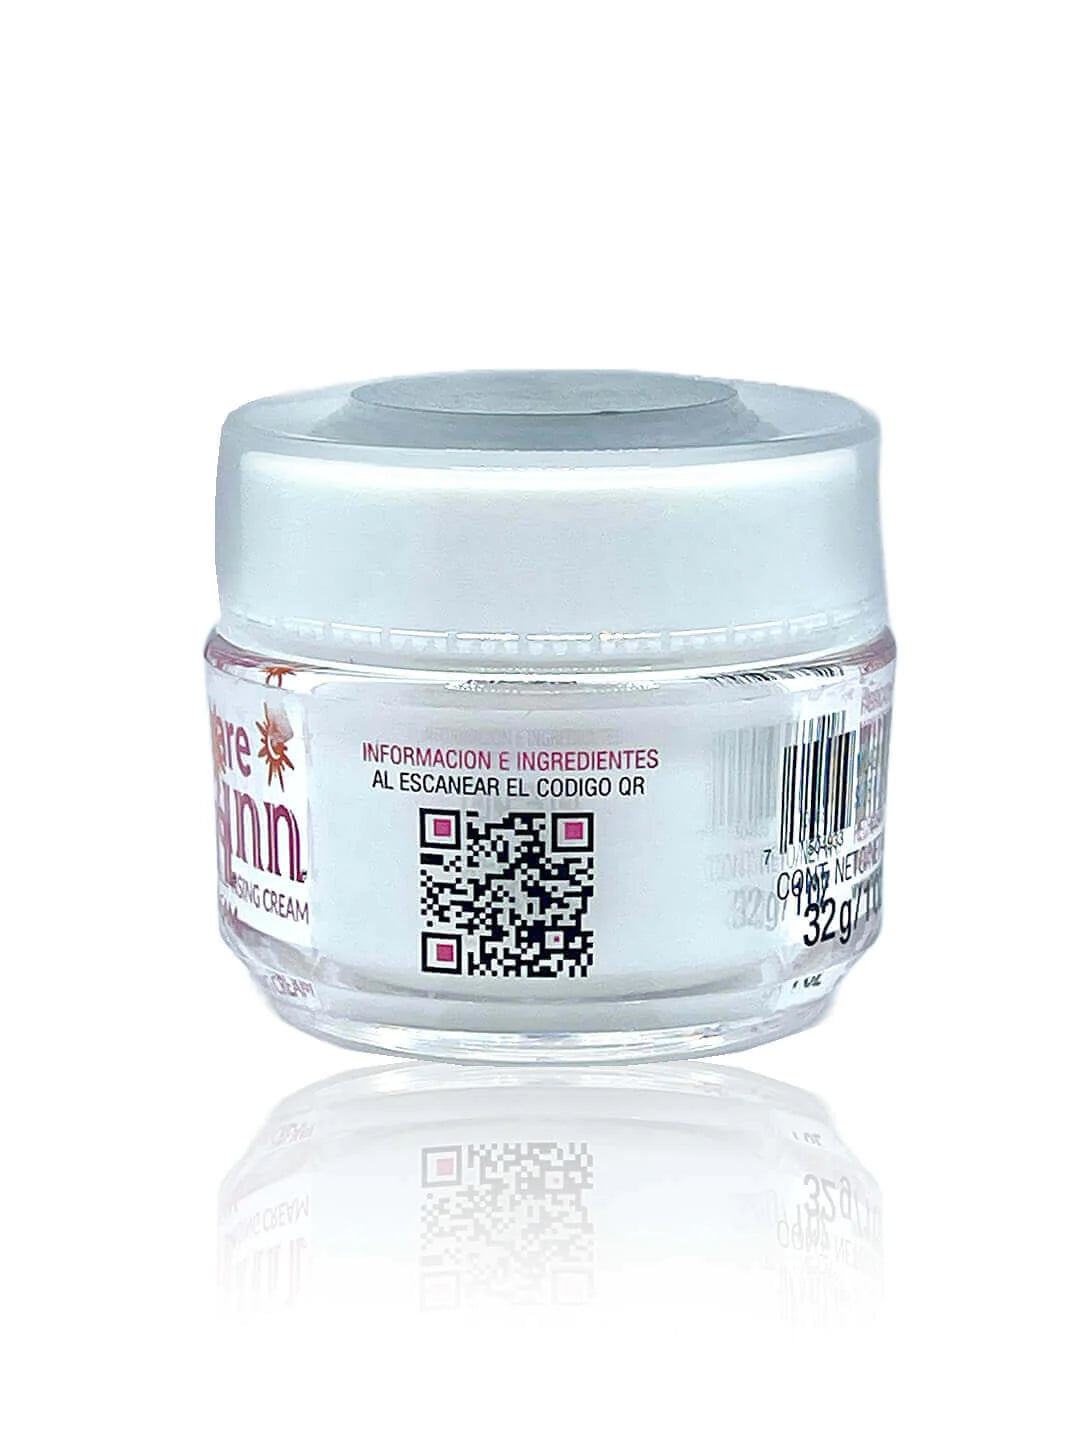 1- NunnCare crema facial - facial cream